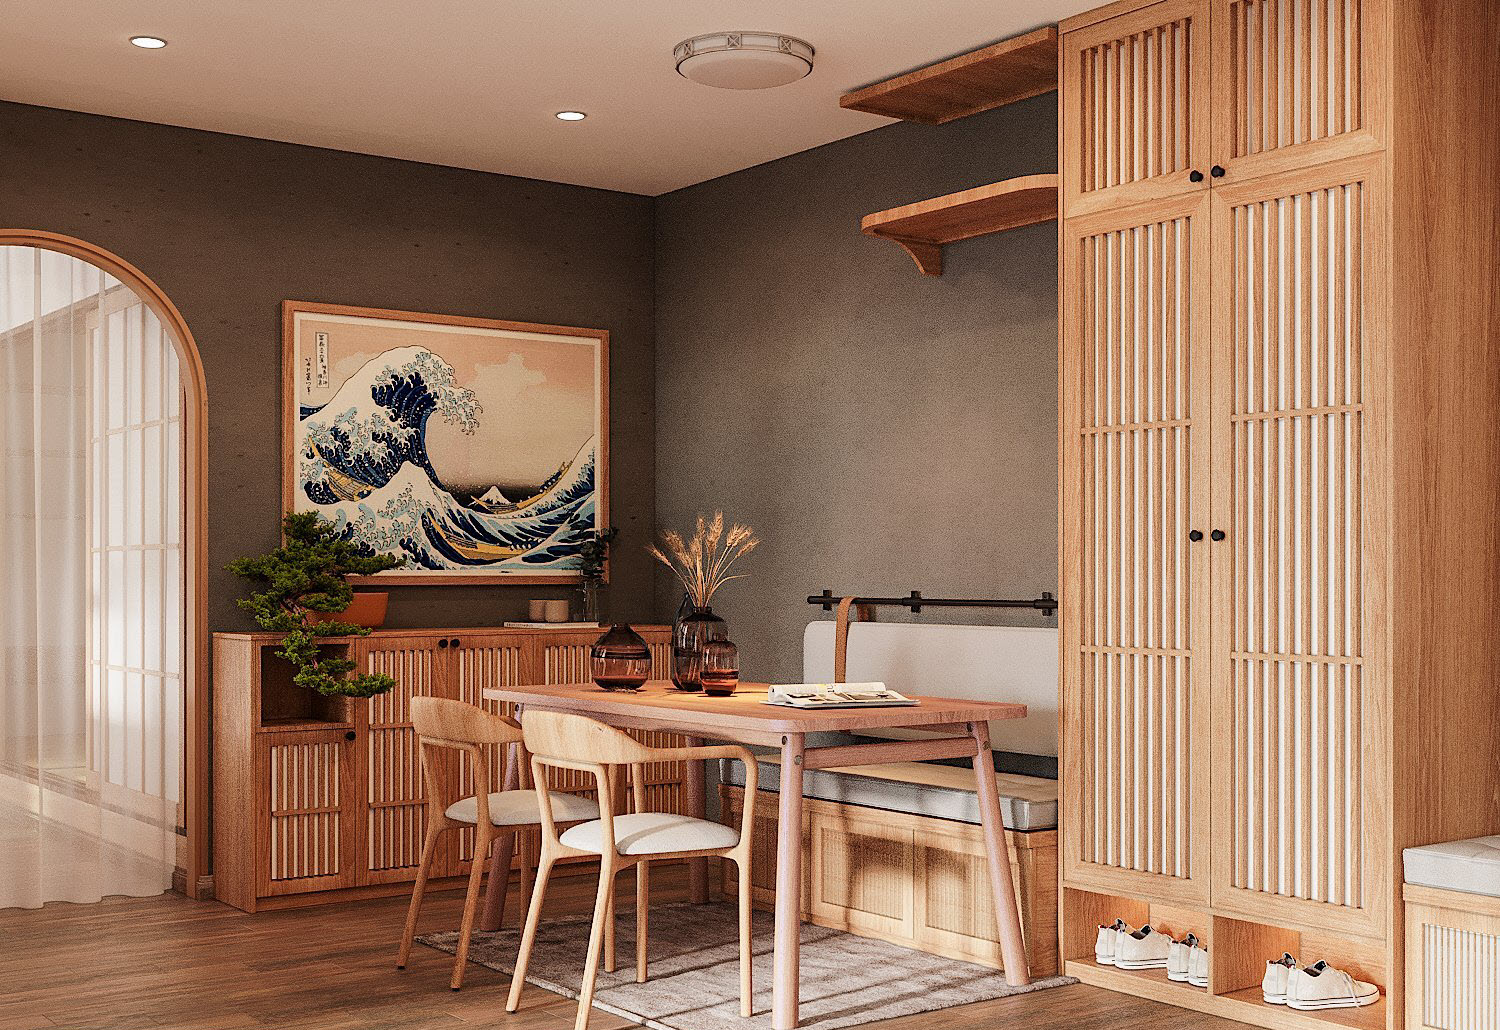 Phòng ăn gọn xinh, ấm cúng với băng ghế dài êm ái. Tường màu xám tạo sự tách biệt tương đối cho phòng ăn, là phông nền hoàn hảo cho tranh tường, chậu cây xanh điểm nhấn.